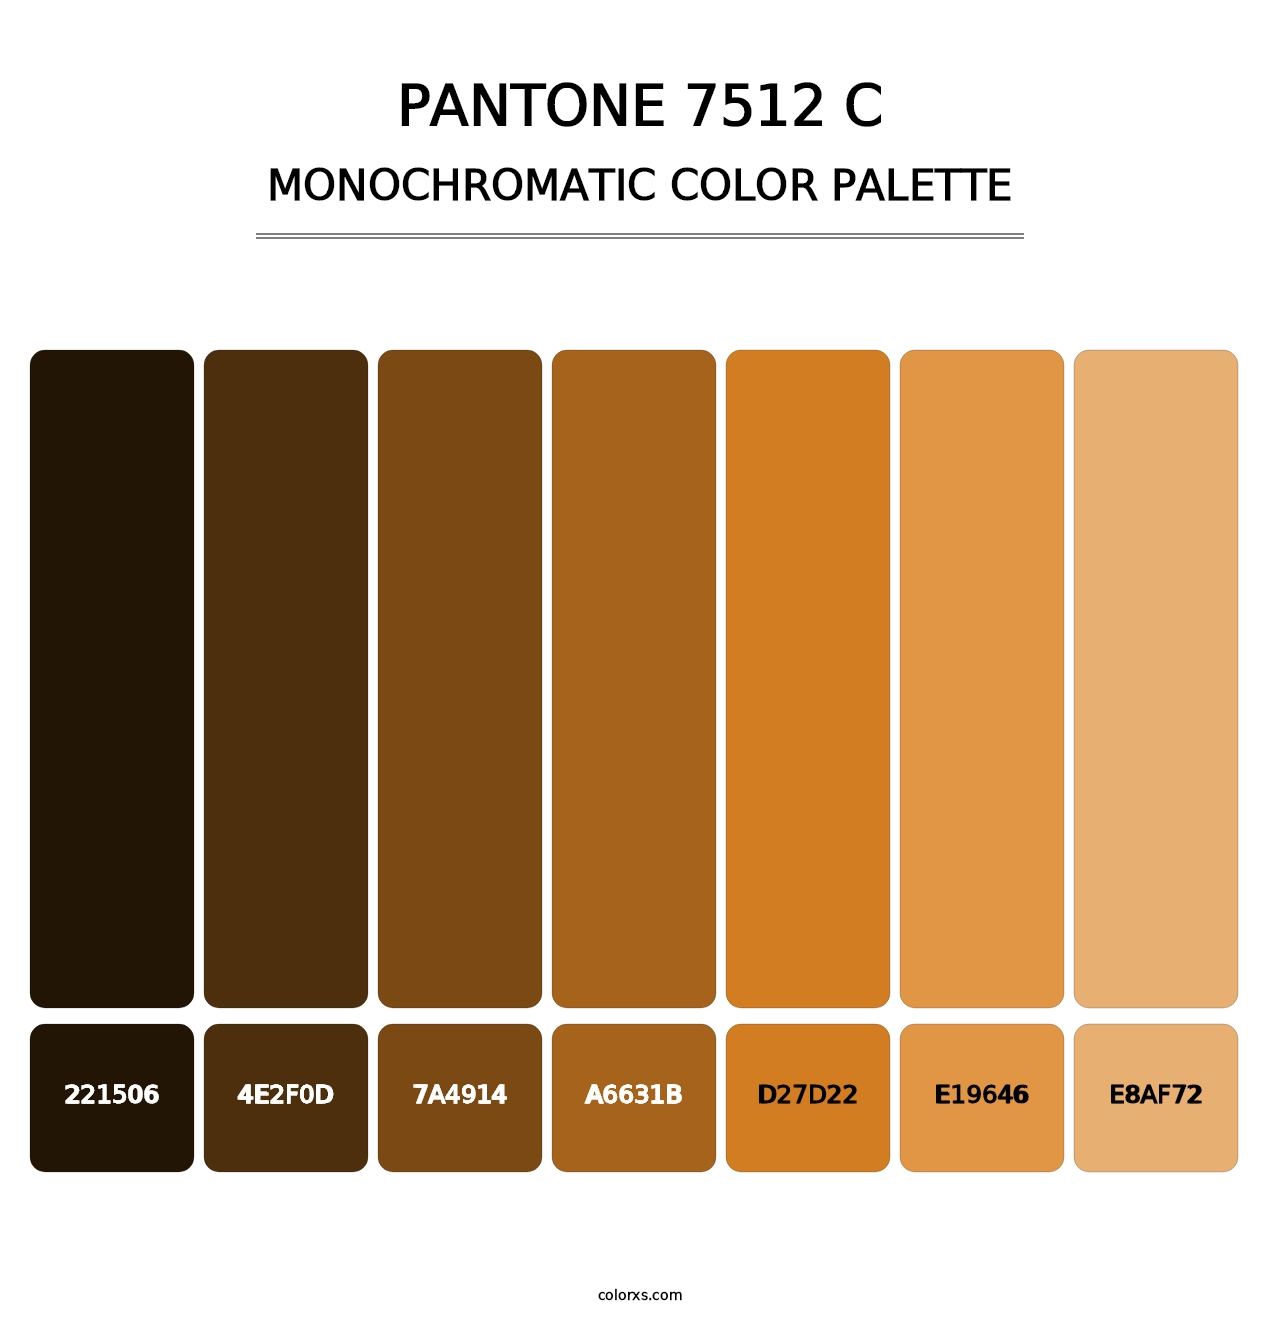 PANTONE 7512 C - Monochromatic Color Palette